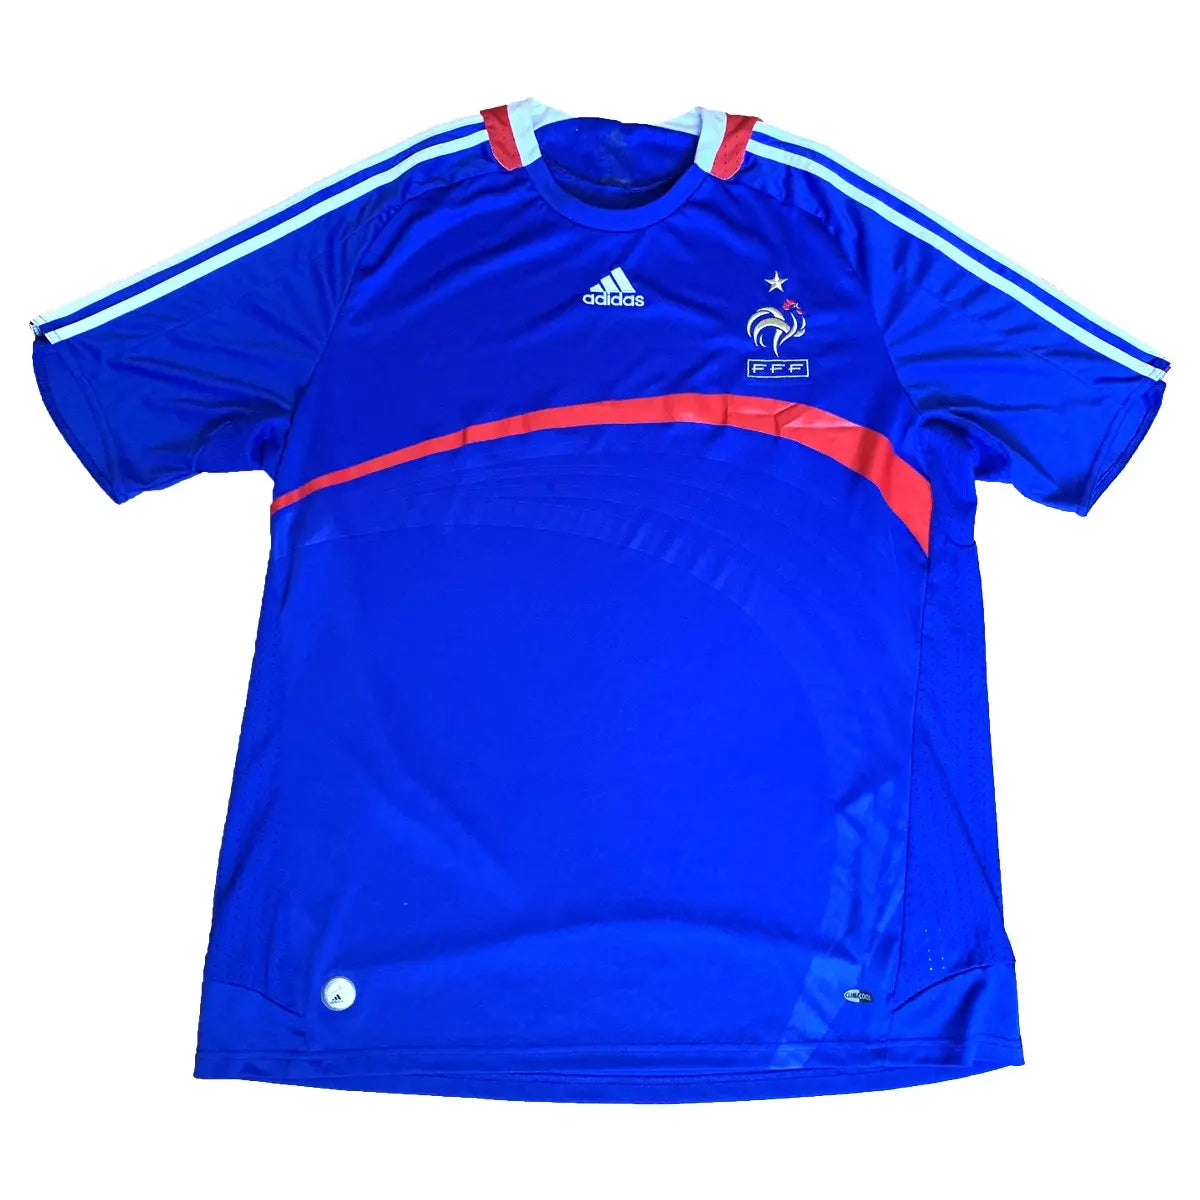 Maillot retro/vintage authentique domicile equipe de france, bleu, blanc et rouge, porté lors de l'euro 2008. On y retrouve l'équipementier adidas